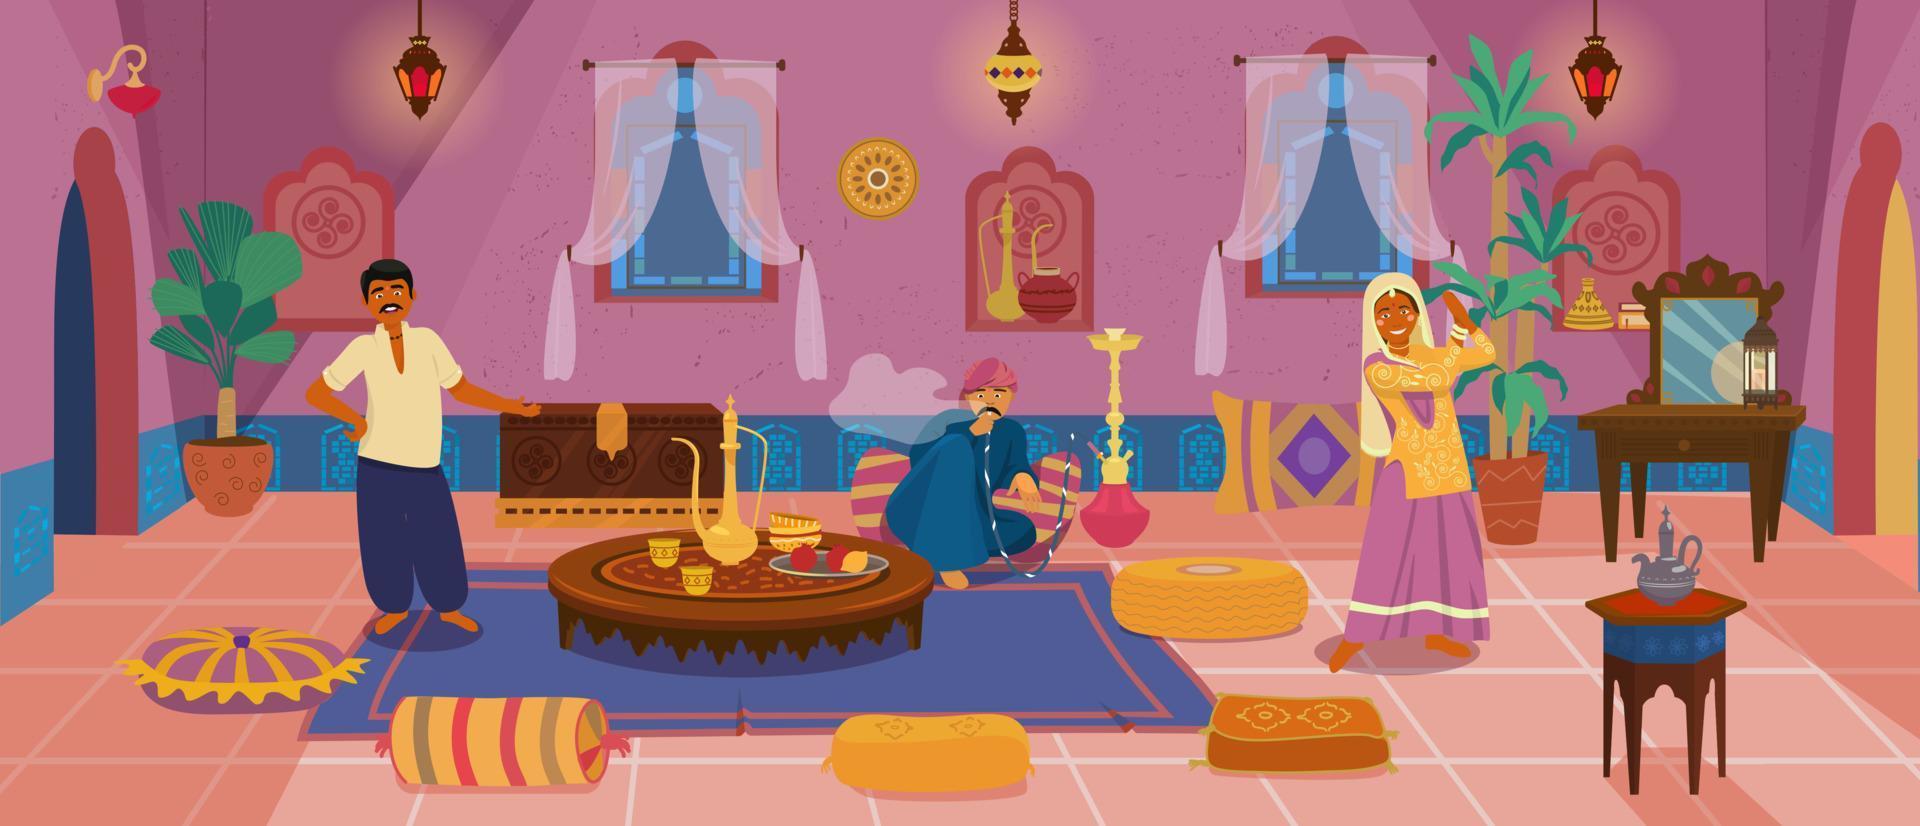 personagens indianos asiáticos no interior autêntico da sala de estar tradicional do Oriente Médio com móveis de madeira e elementos de decoração. homem fumando cachimbo de água, mulher dançando, homem oferece chá. vetor de desenhos animados.